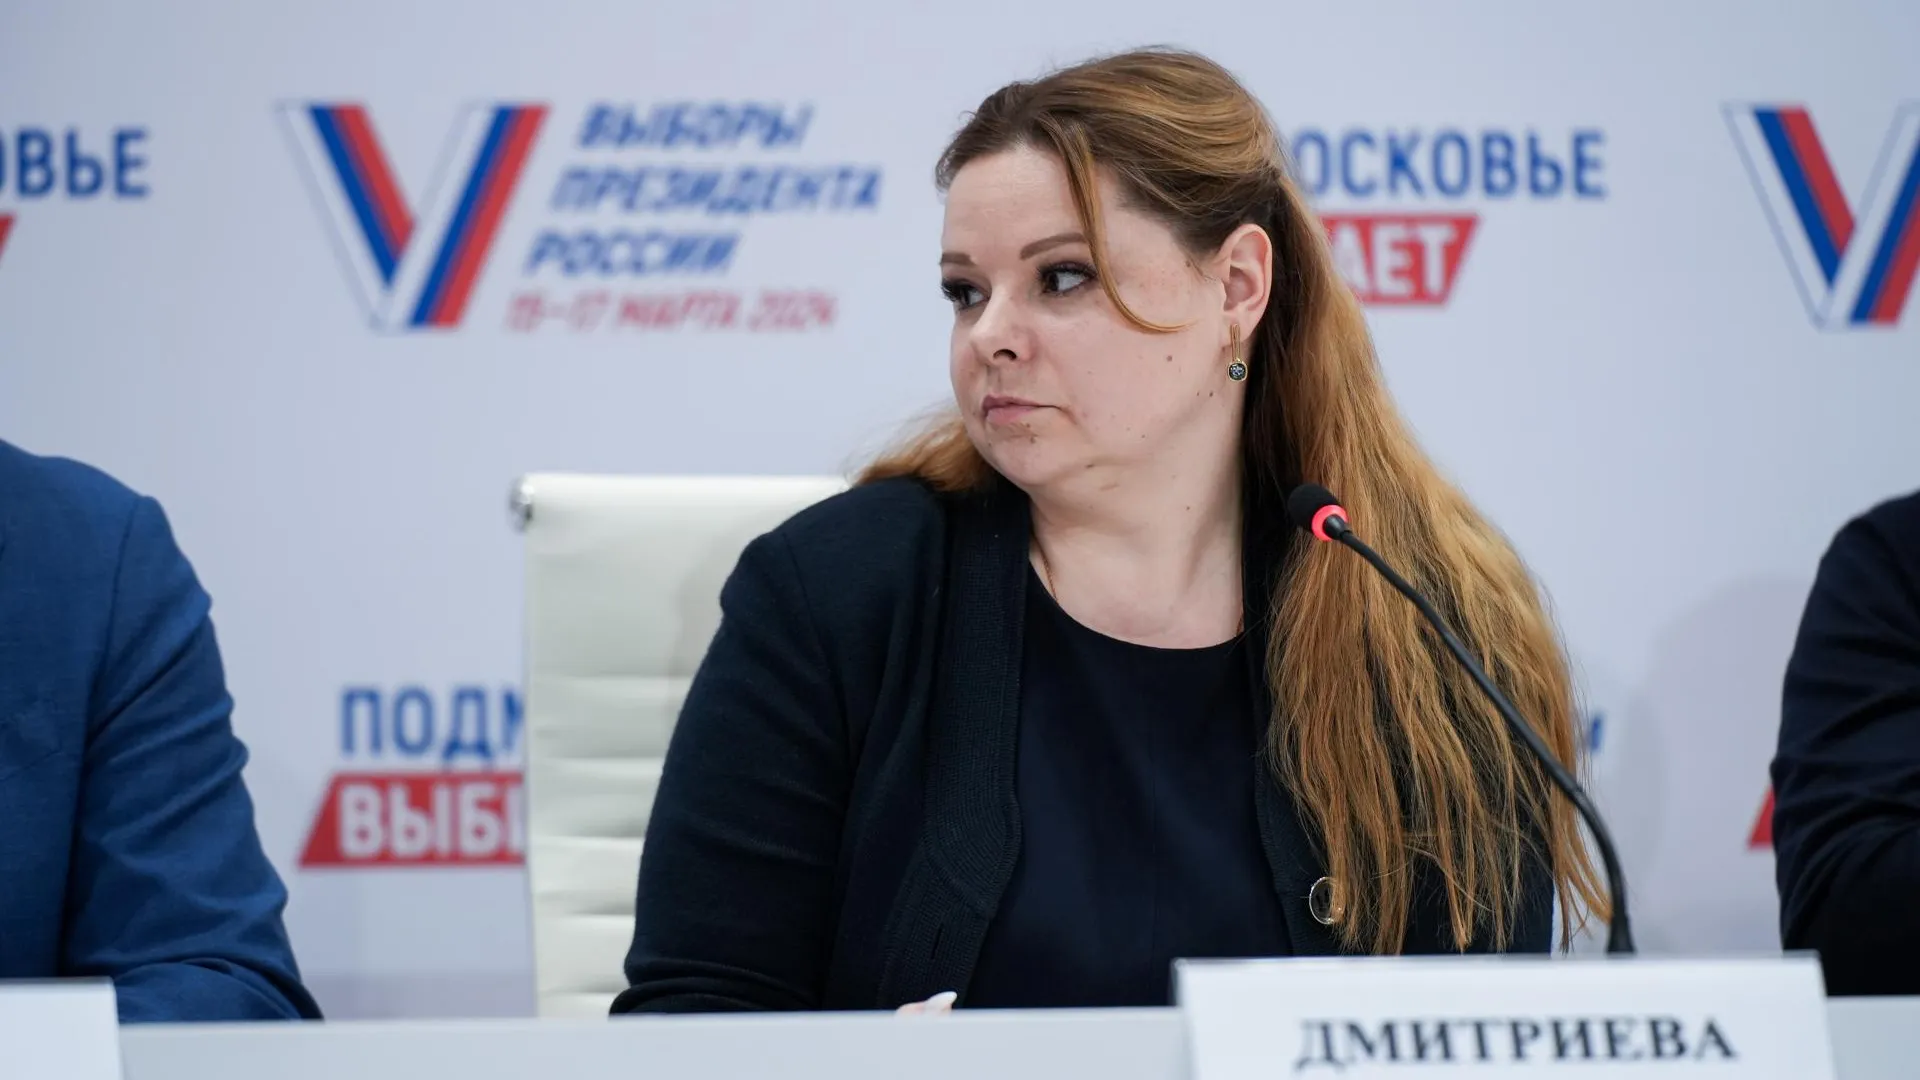 Дмитриева: пристальный общественный контроль обеспечил прозрачность выборов